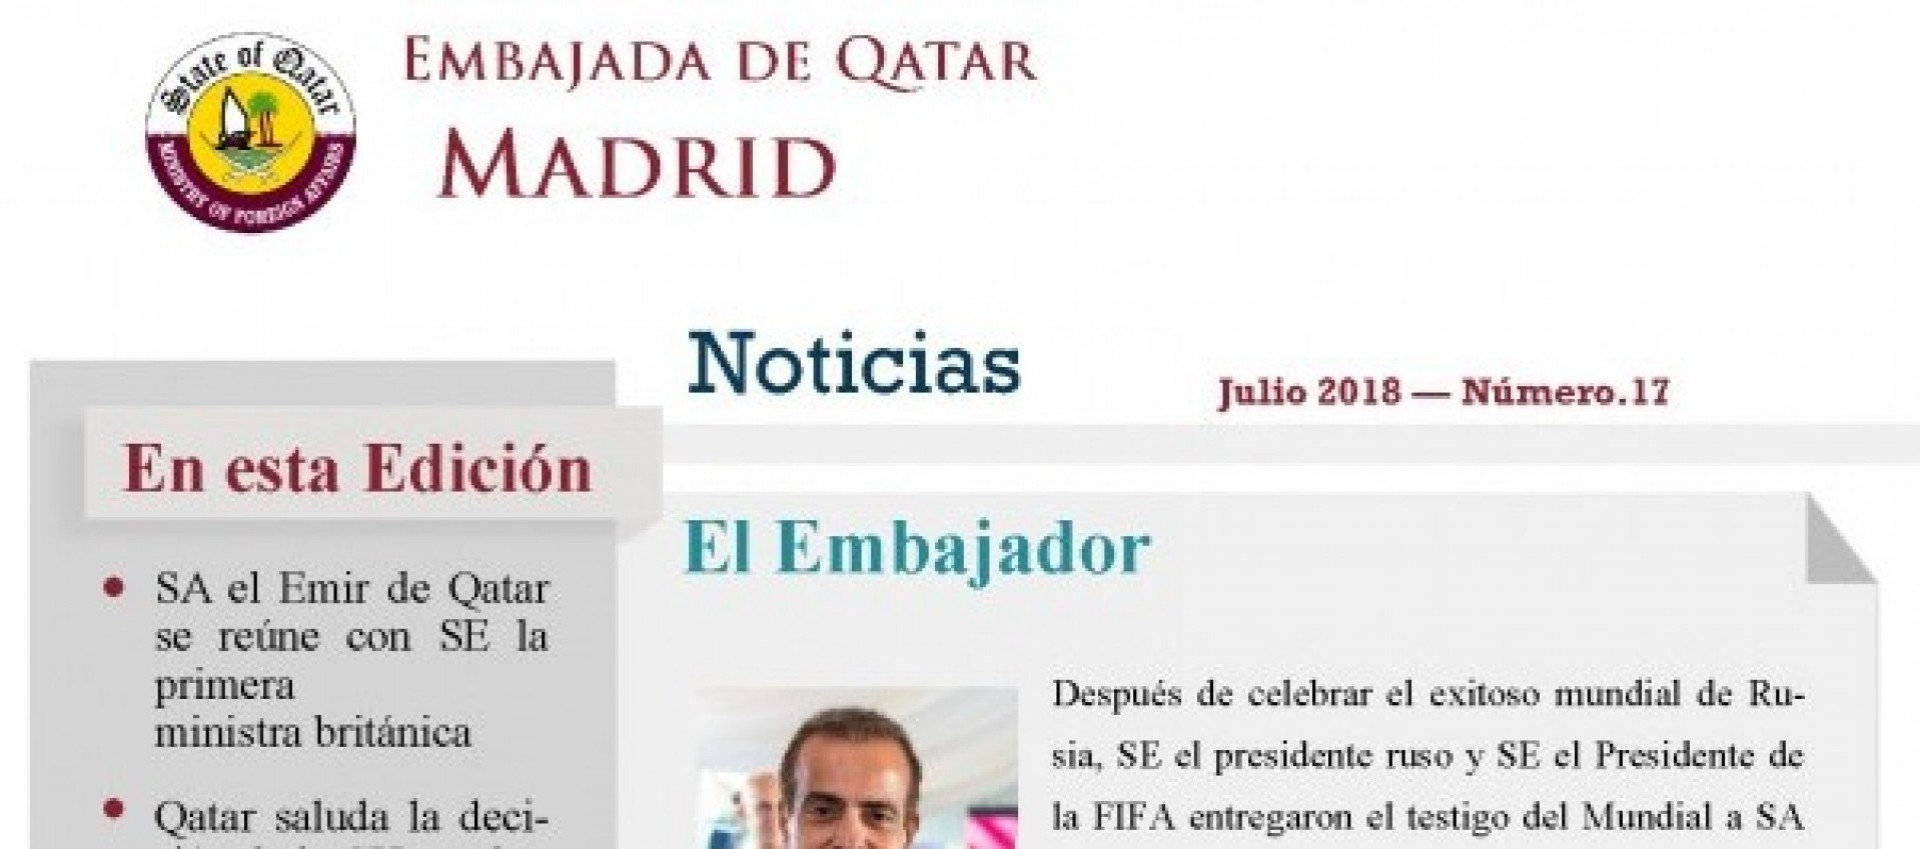 Invitación embajador Qatar Madrid a Raúl Torres